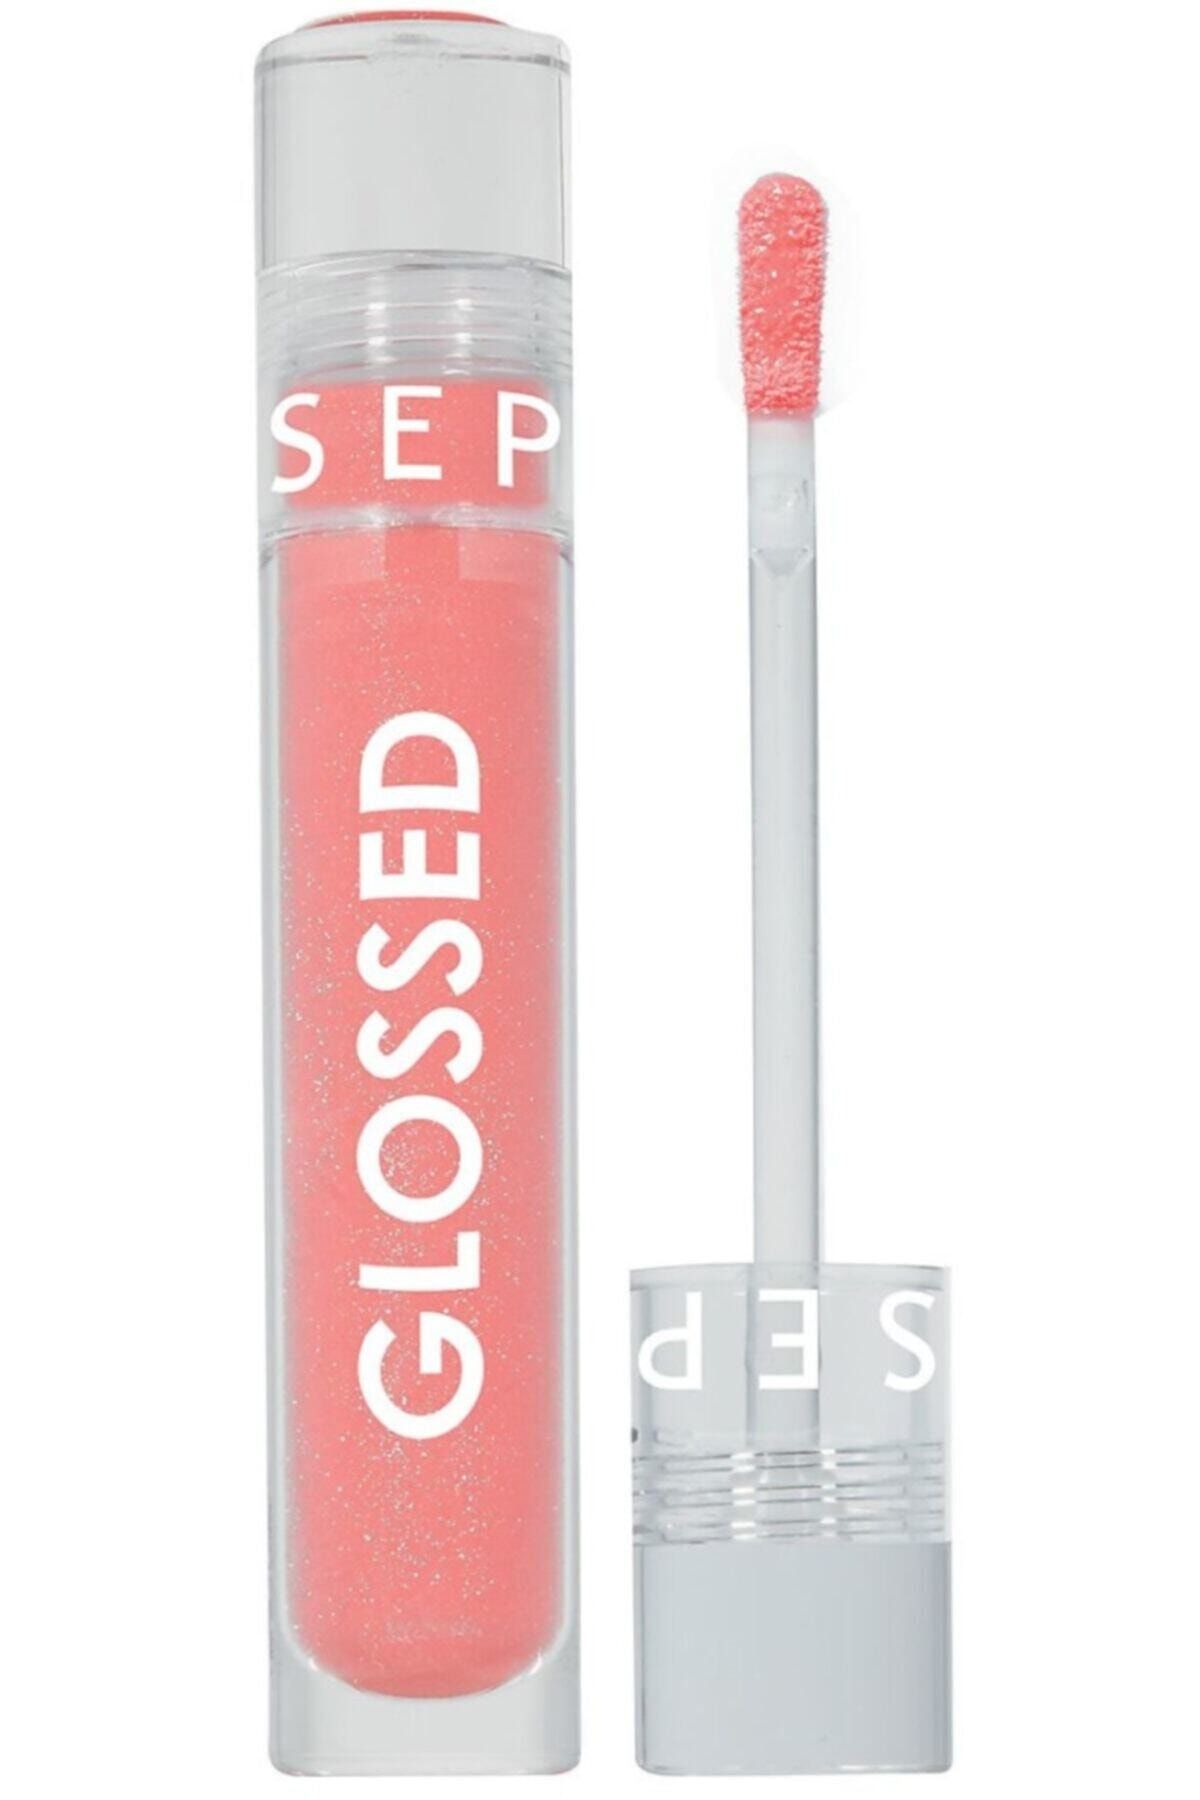 Sephora Glossed Lip Gloss